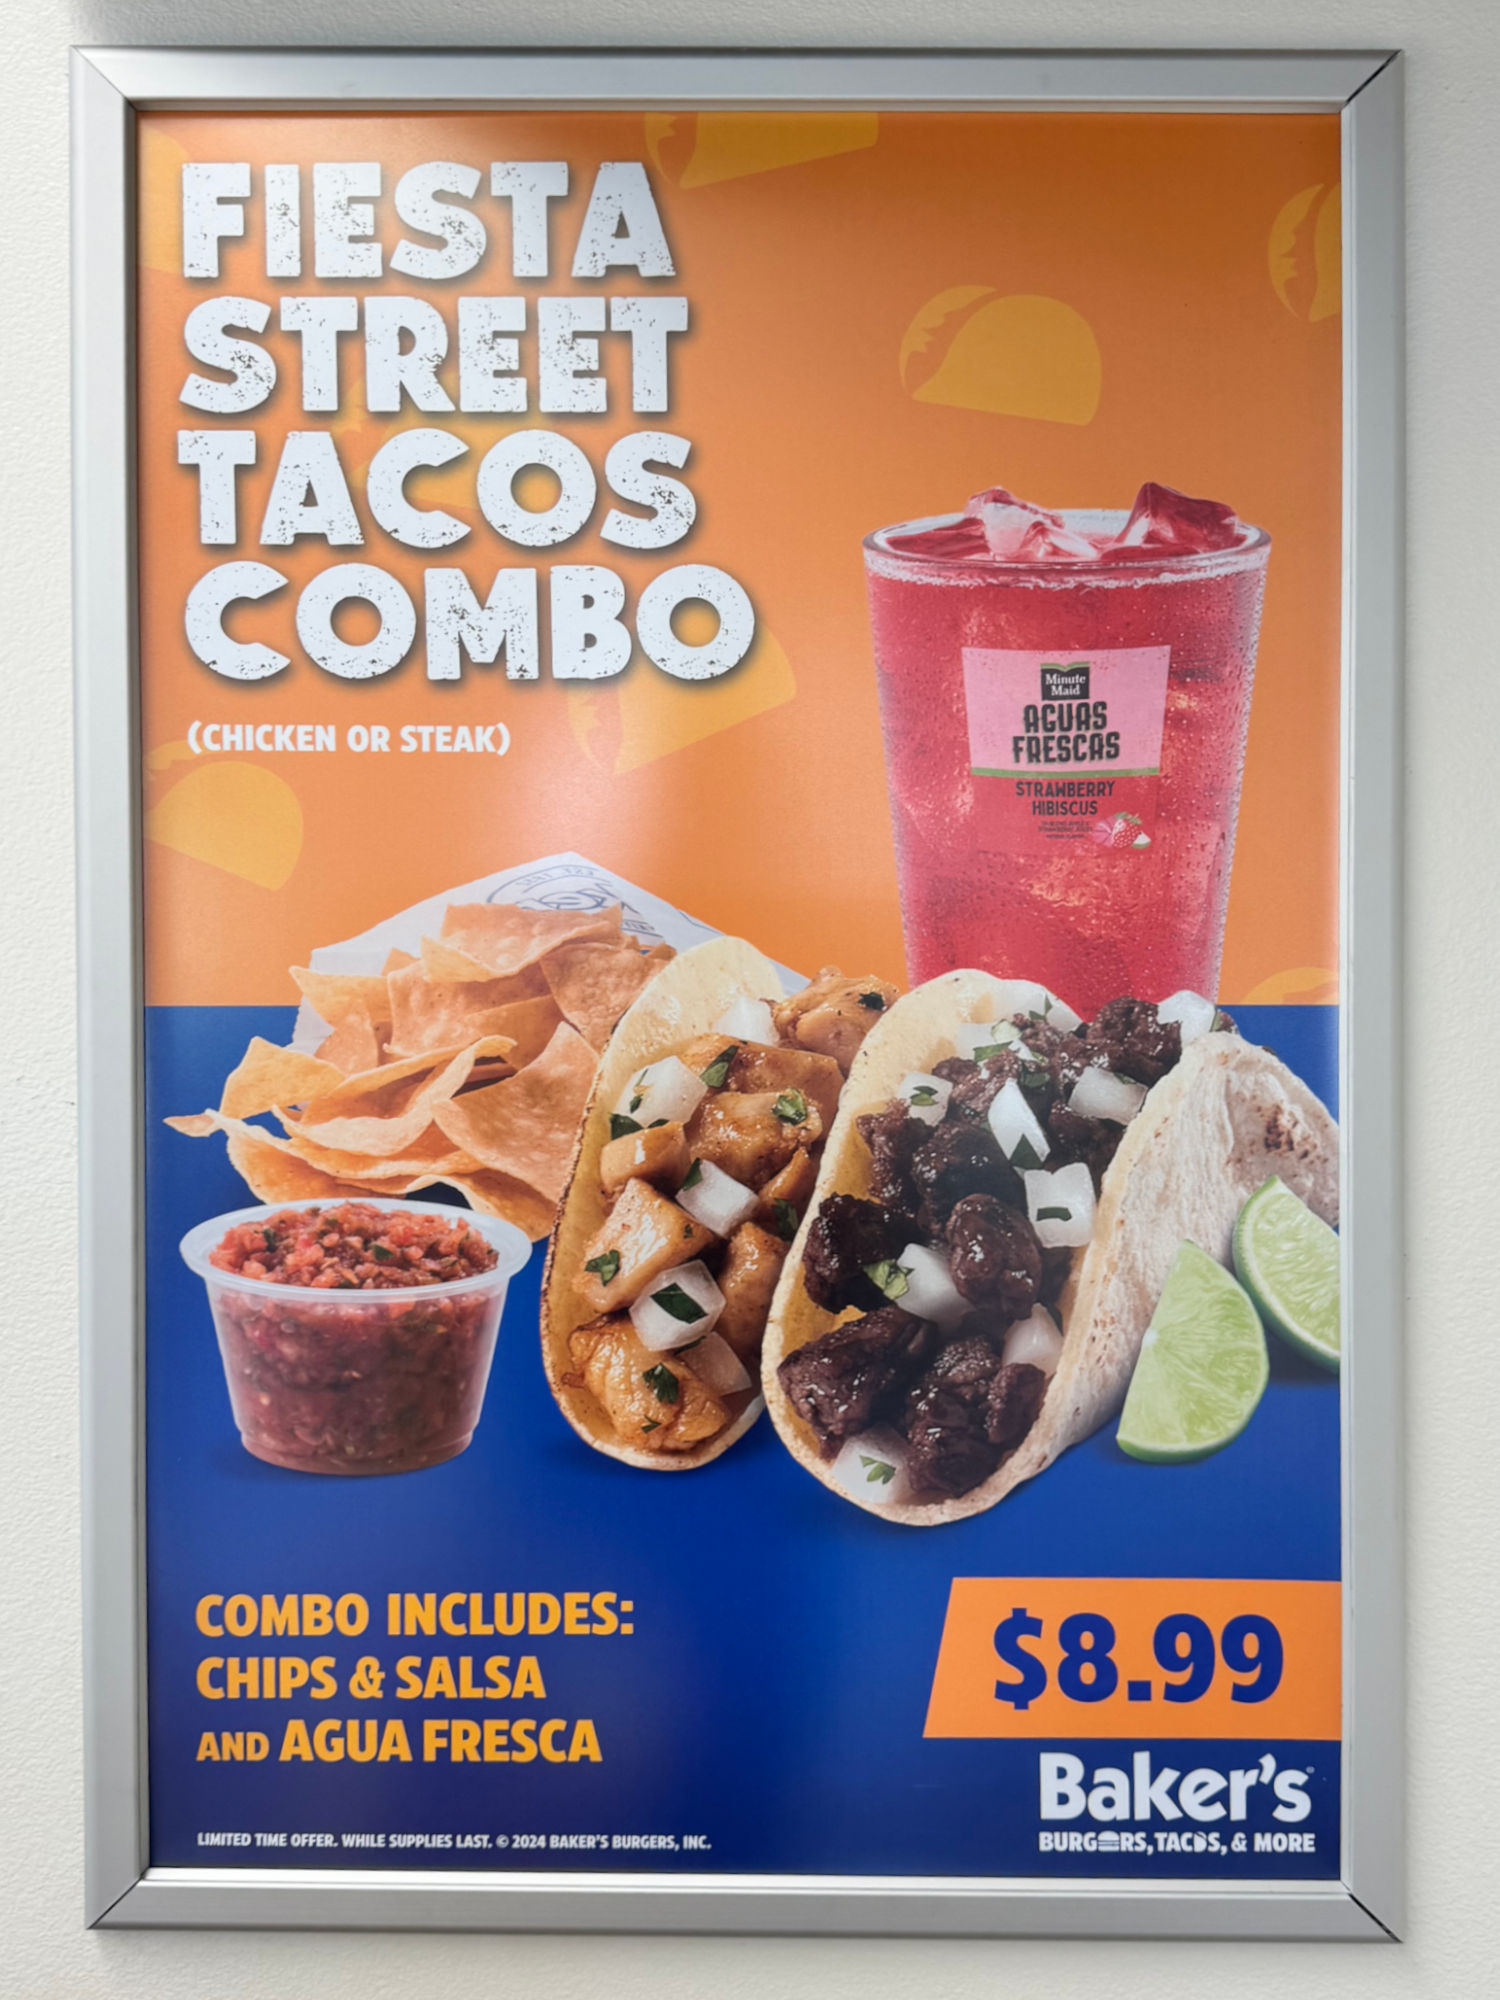 Baker's Drive-Thru Fiesta Street Tacos Combo